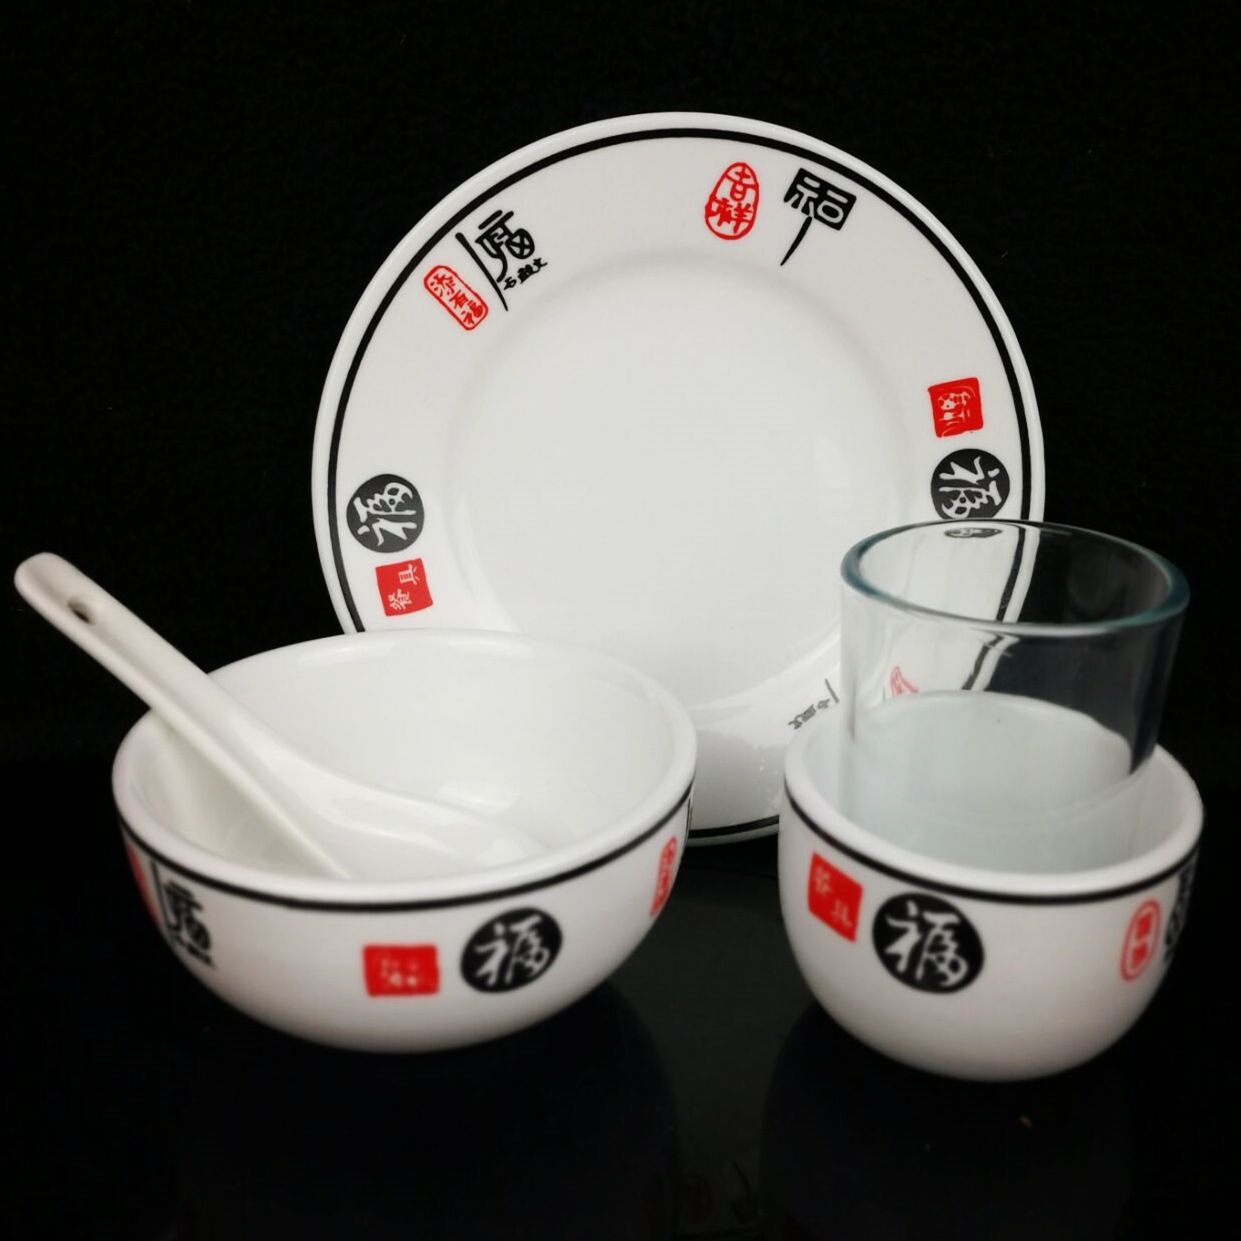 生产加厚强化瓷消毒餐具 批发钢化玻璃杯勺子46寸平盘碗加印logo